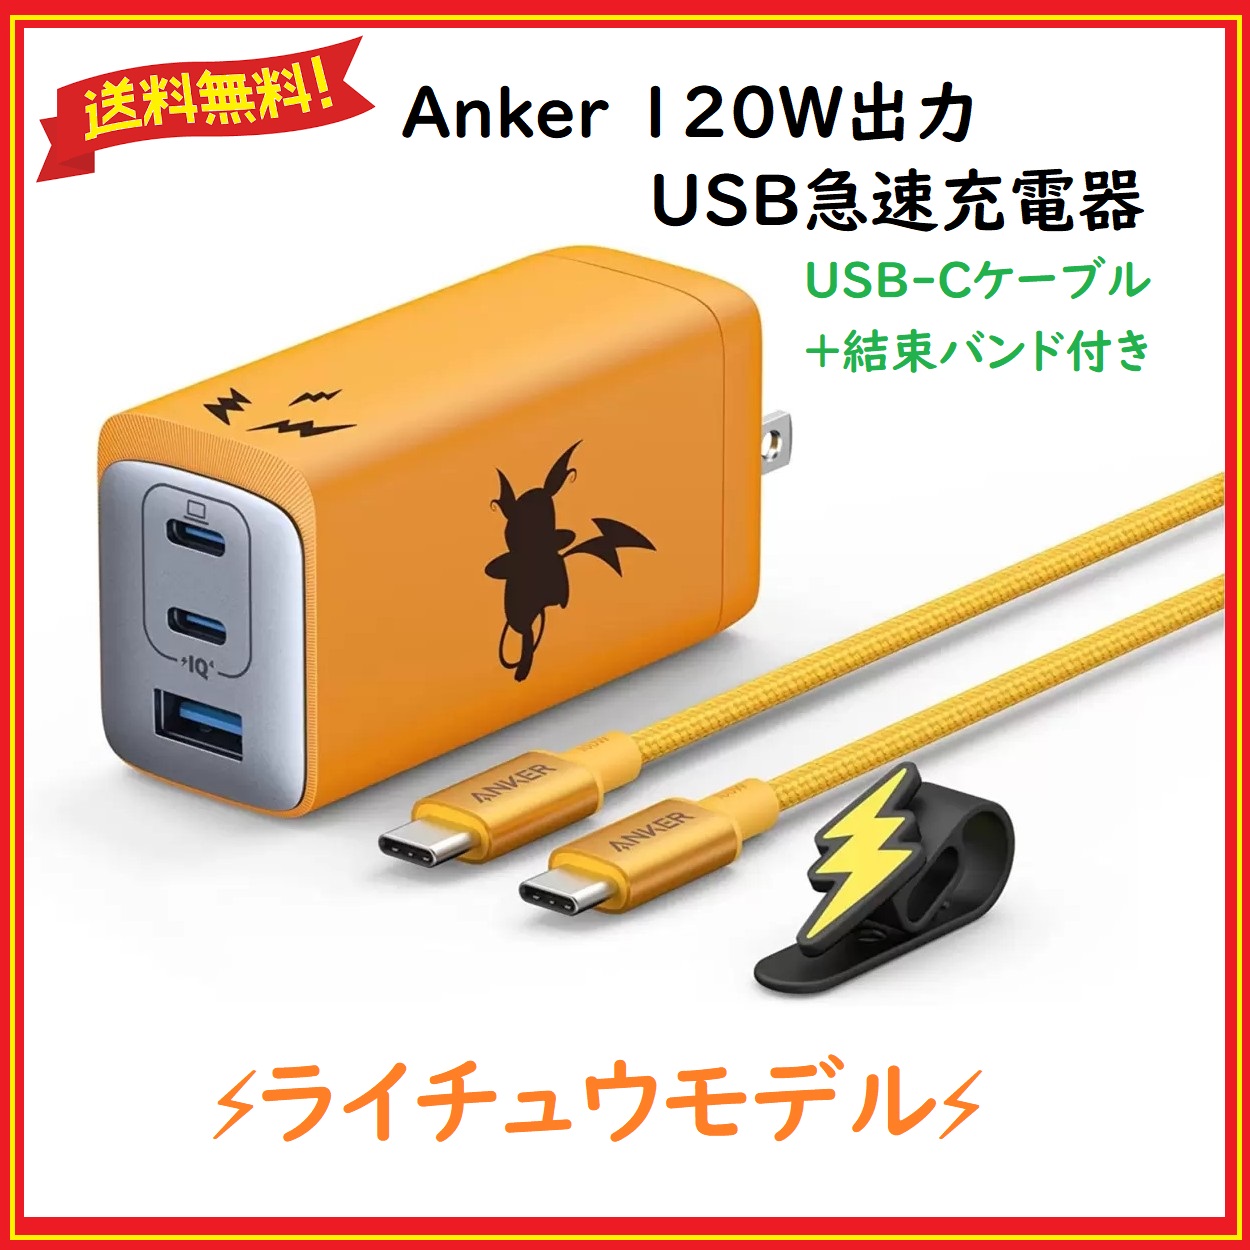 Anker(アンカー) USB急速充電器 ライチュウモデル 120W高出力 スマホ 